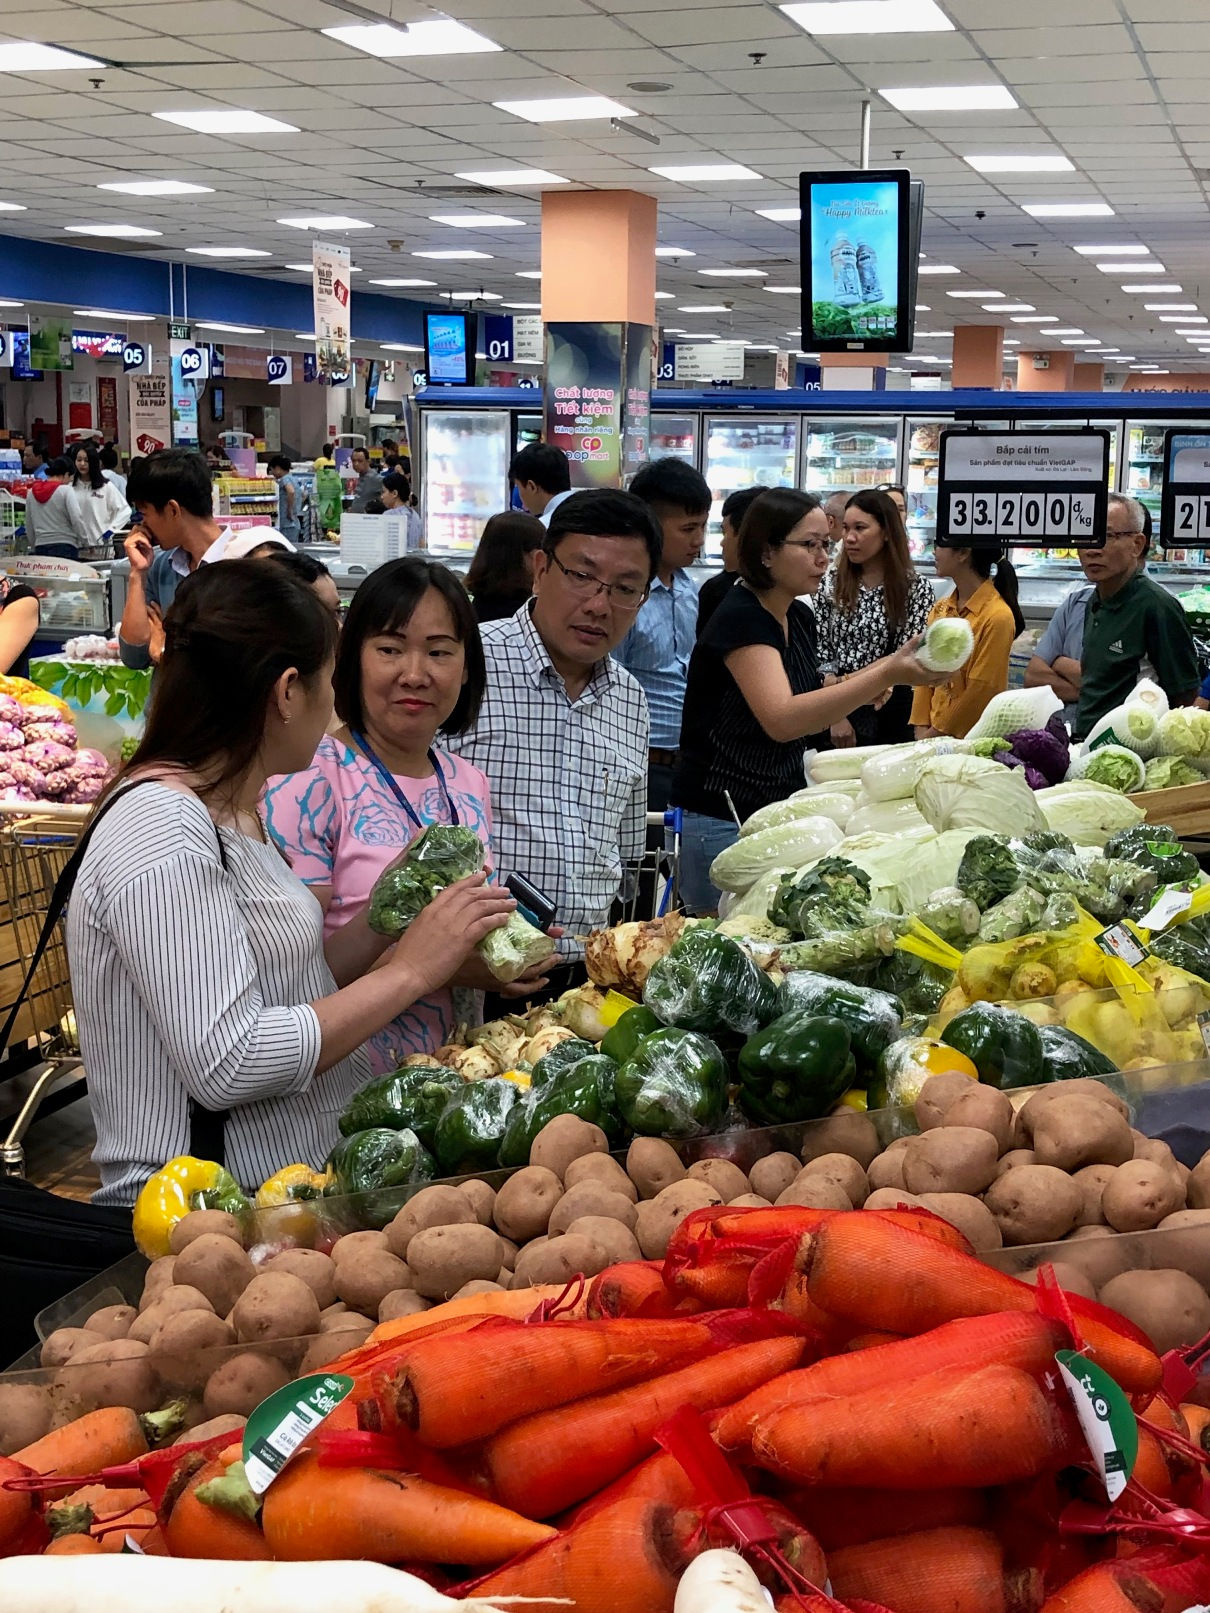 Hiện nay đã có nhiều loại nông sản đảm bảo xuất xứ và chất lượng đang được kinh doanh tại hệ thống siêu thị Co.opmart của Saigon Co.op.